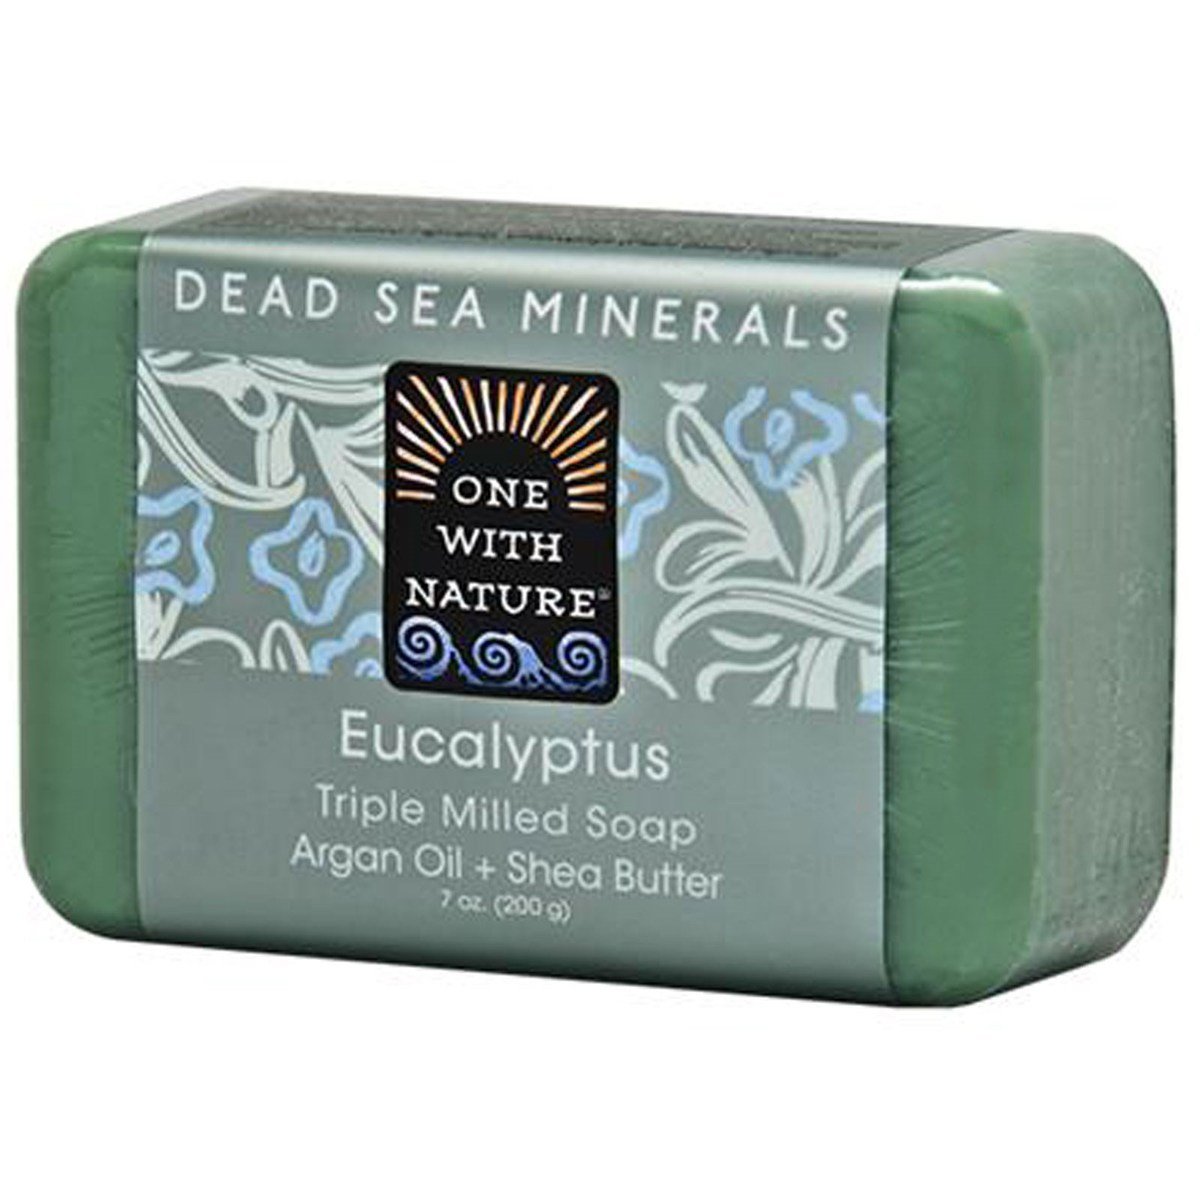 死海礦物尤加利香皂(Eucalyptus)*新舊包裝隨機發貨*